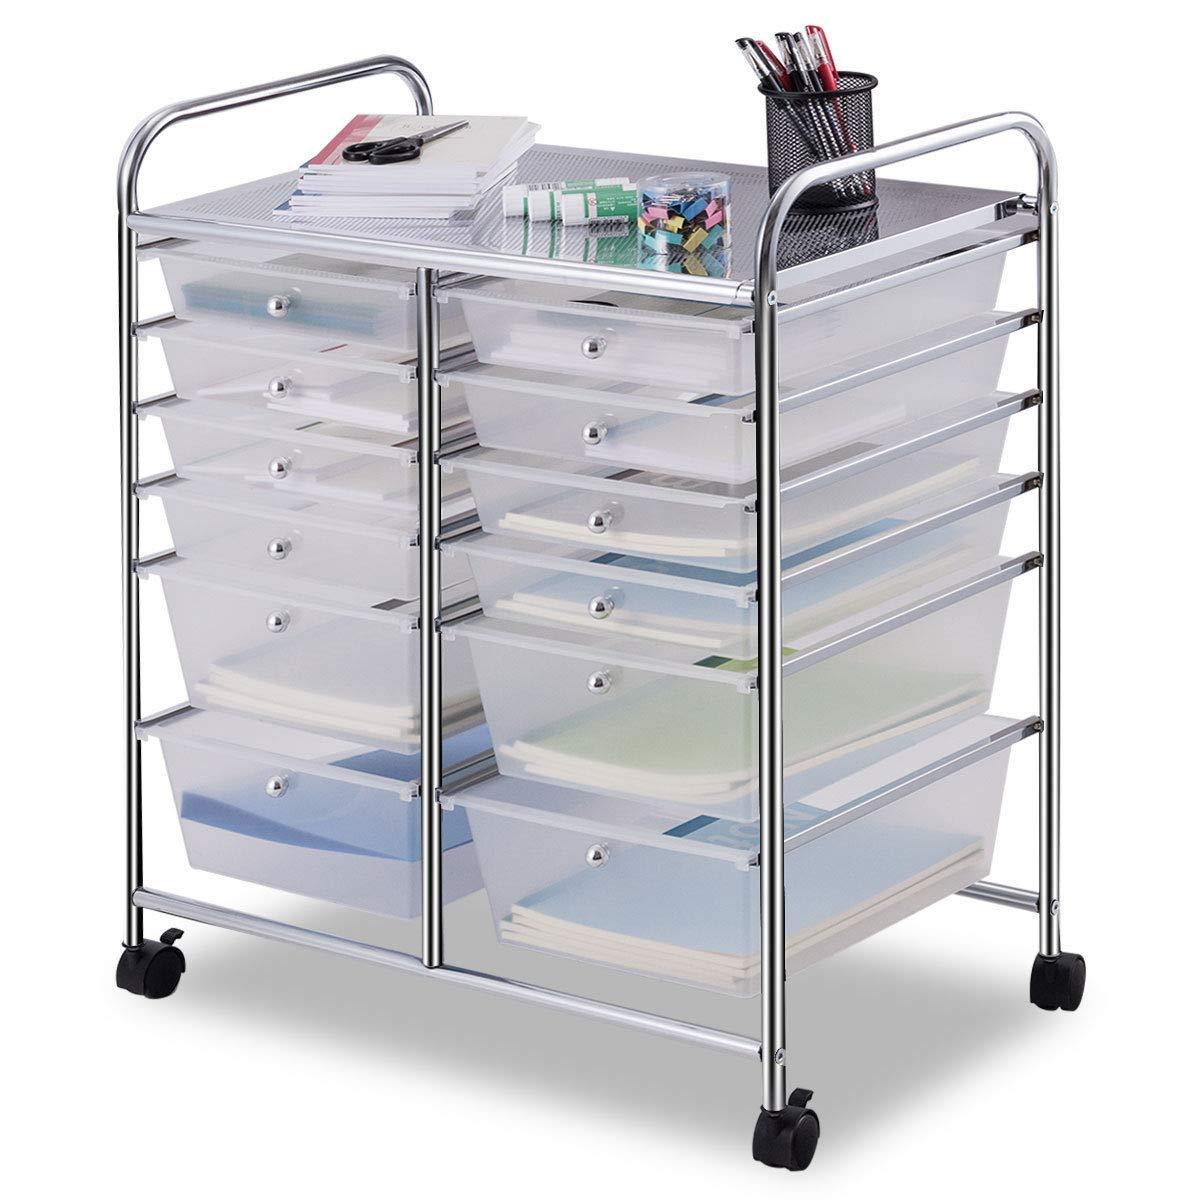 Giantex 12 Drawer Rolling Storage Cart